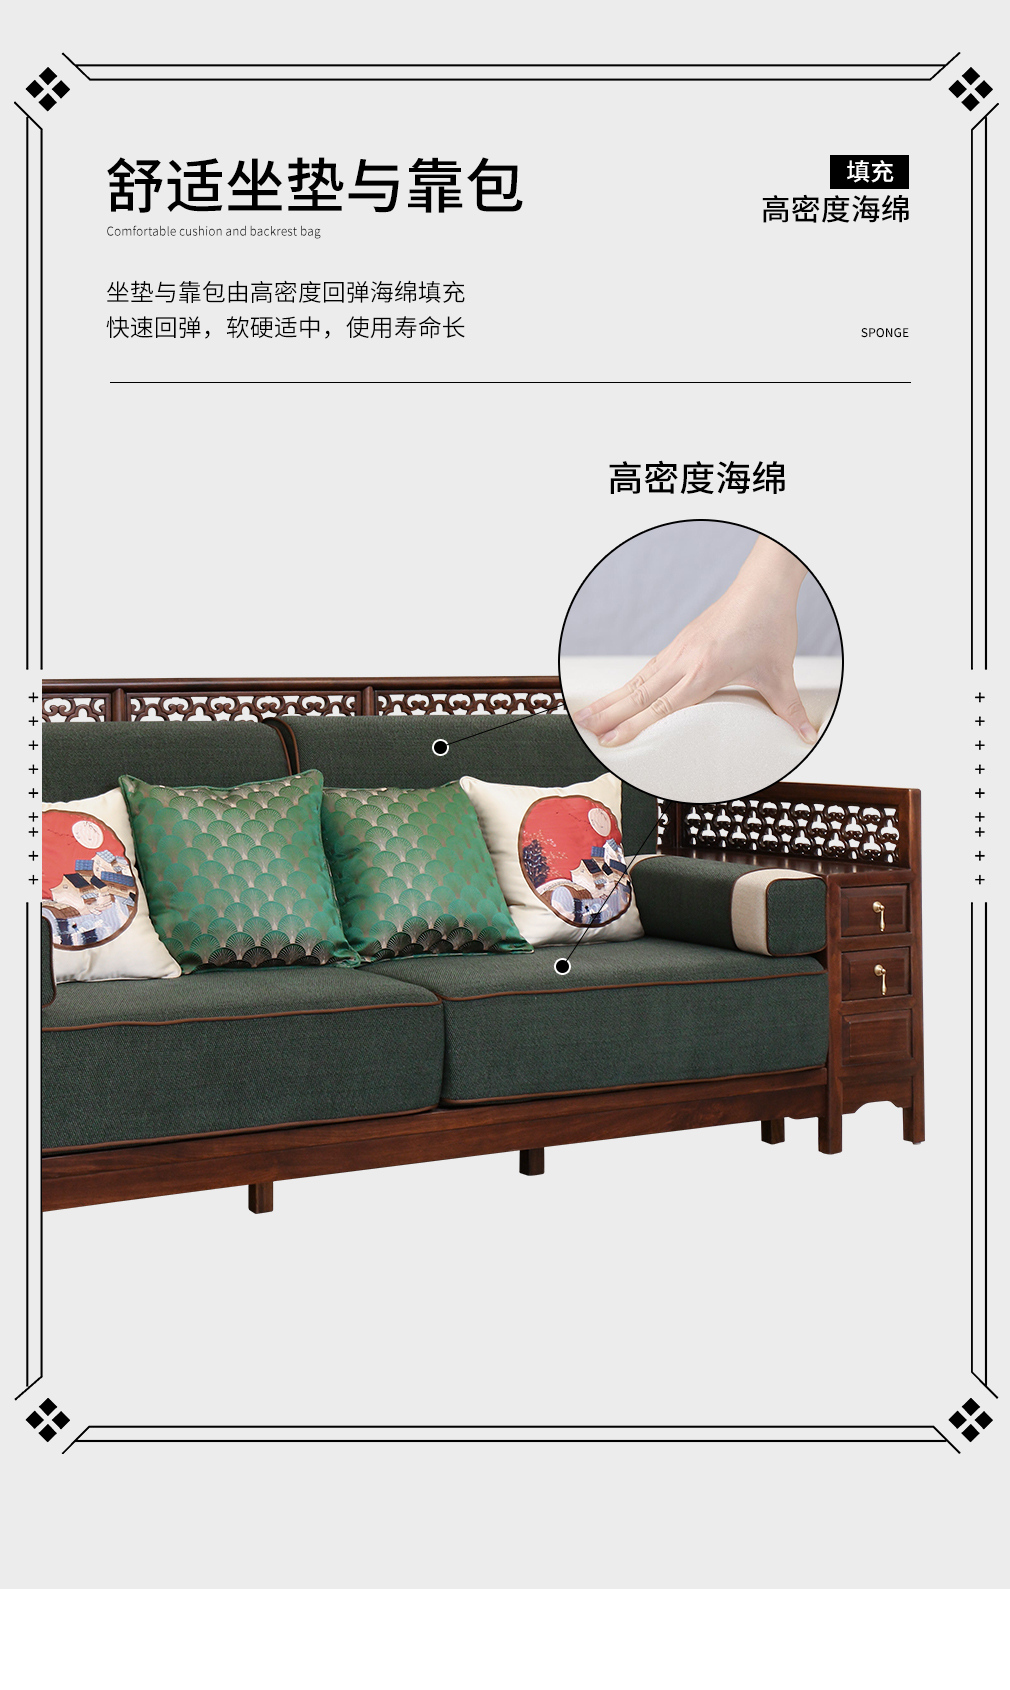 新中式沙发2_08.jpg